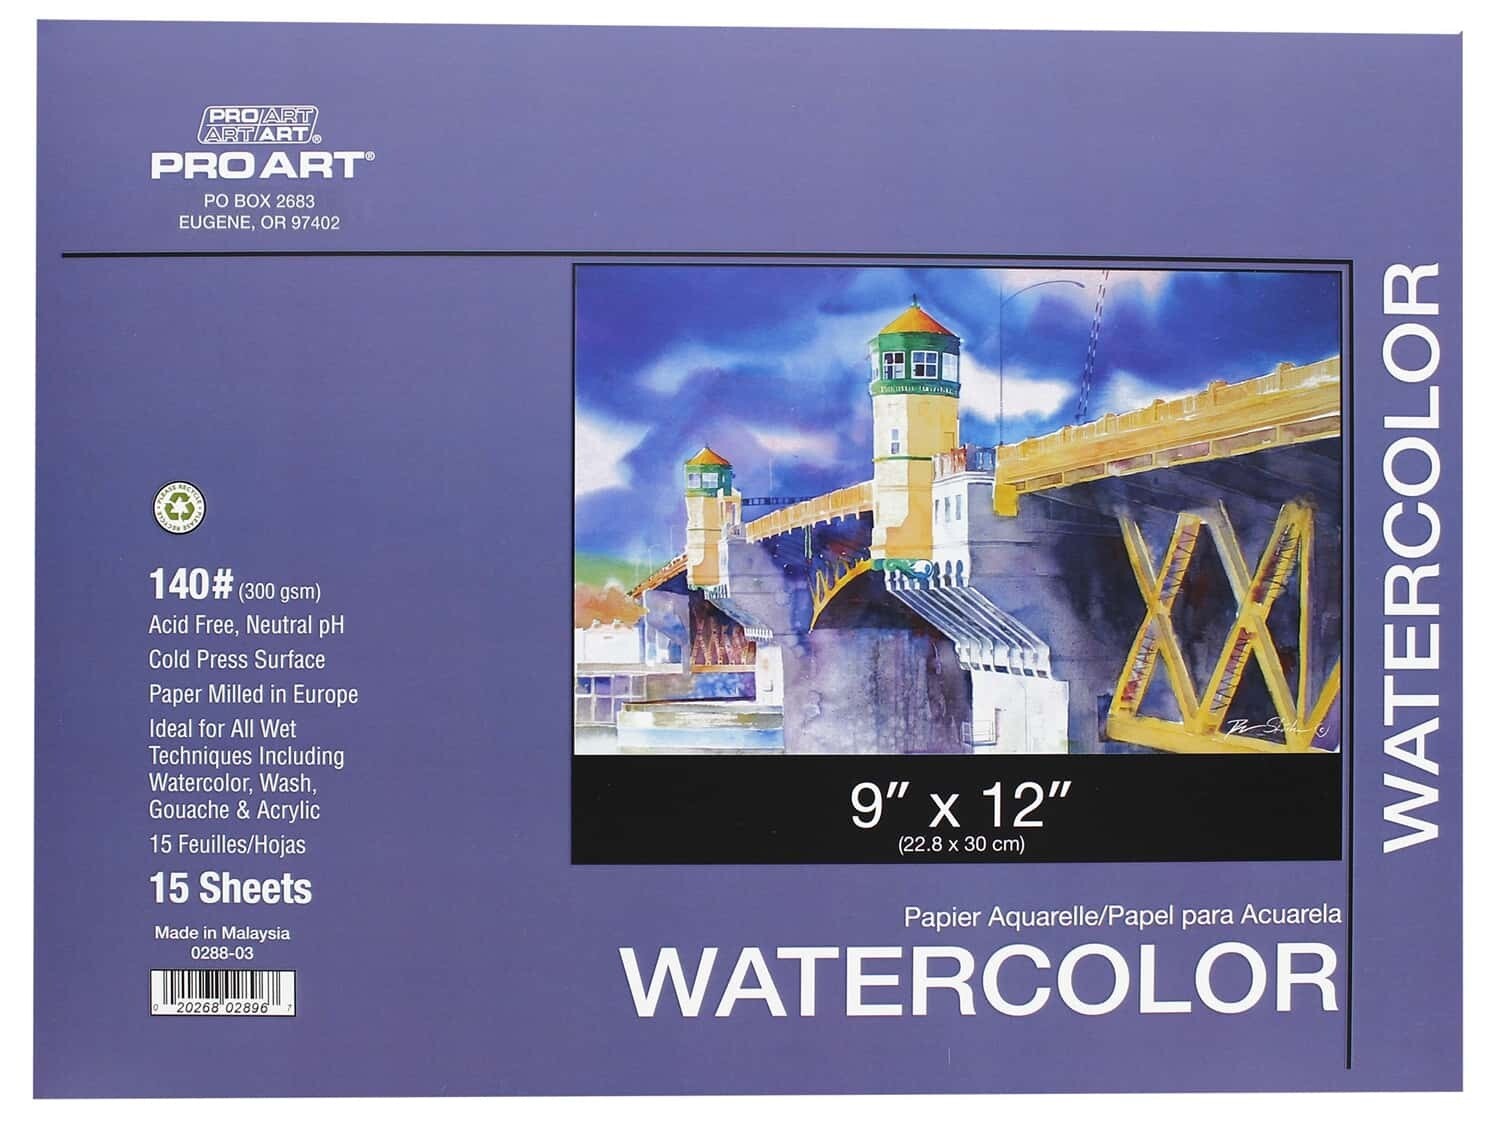 Pro Art Watercolor Landscape Paper Blocks & Pads